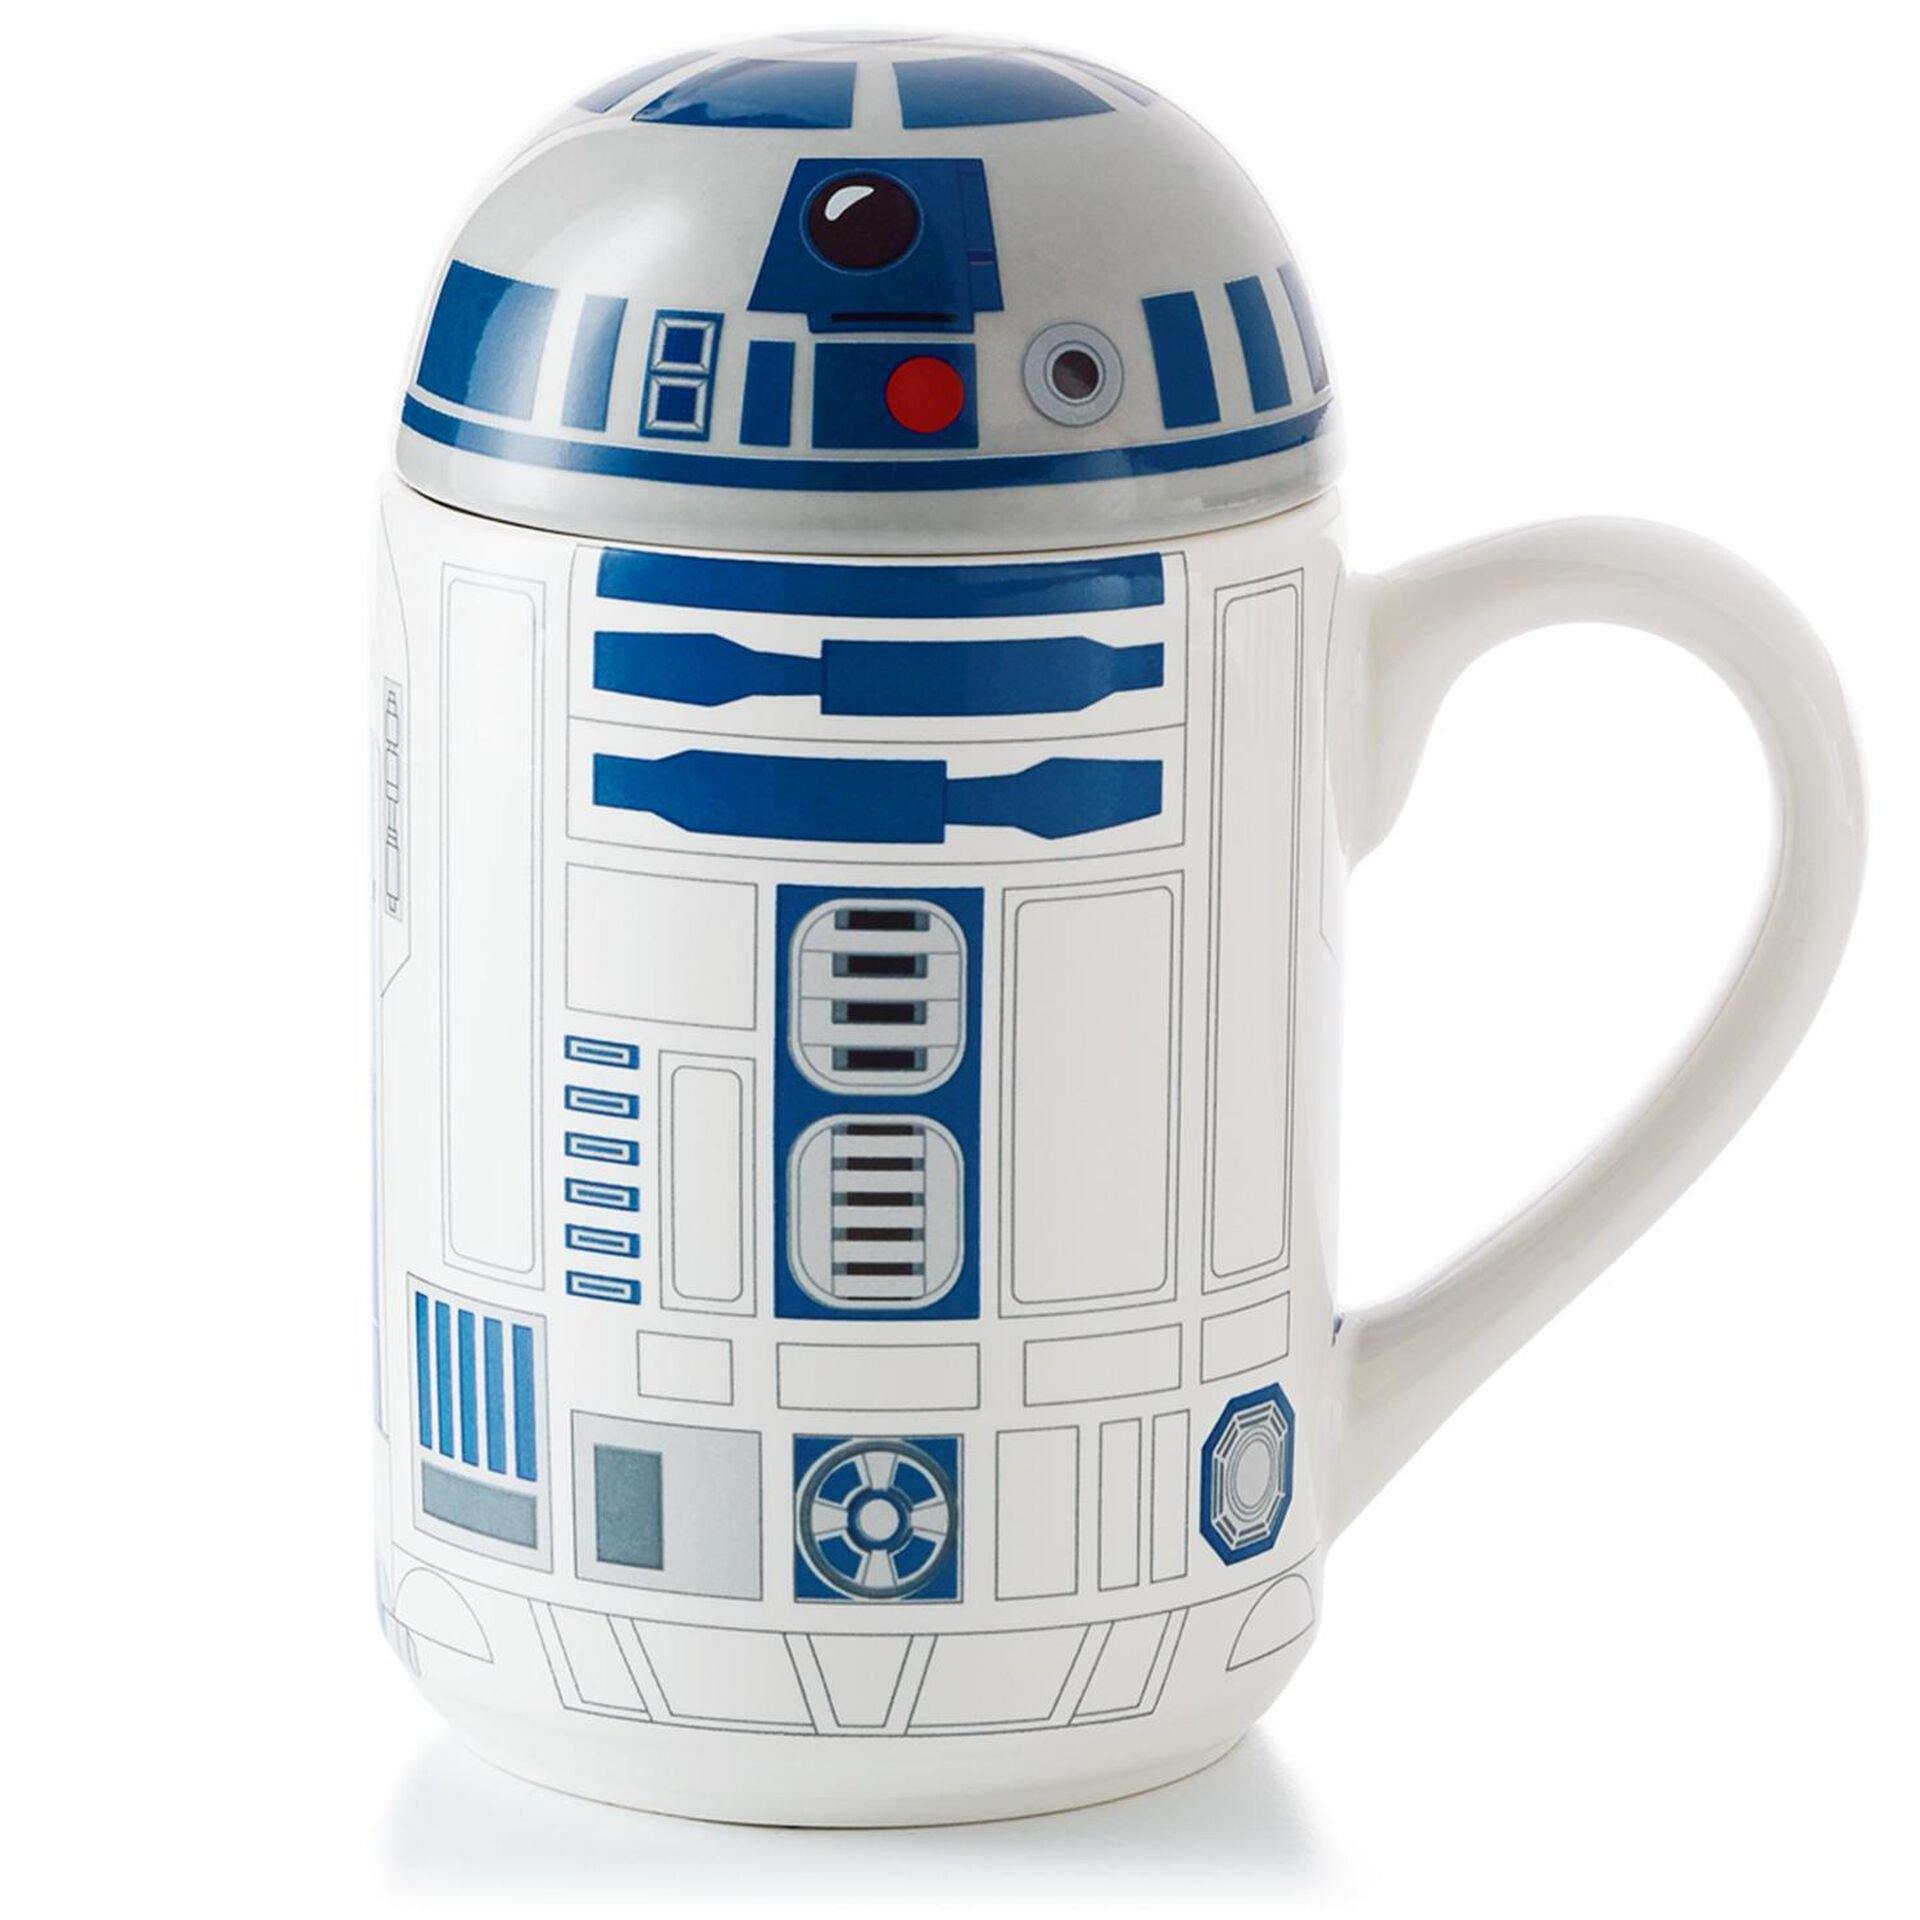 HMK R2-D2™ Mug With Sound